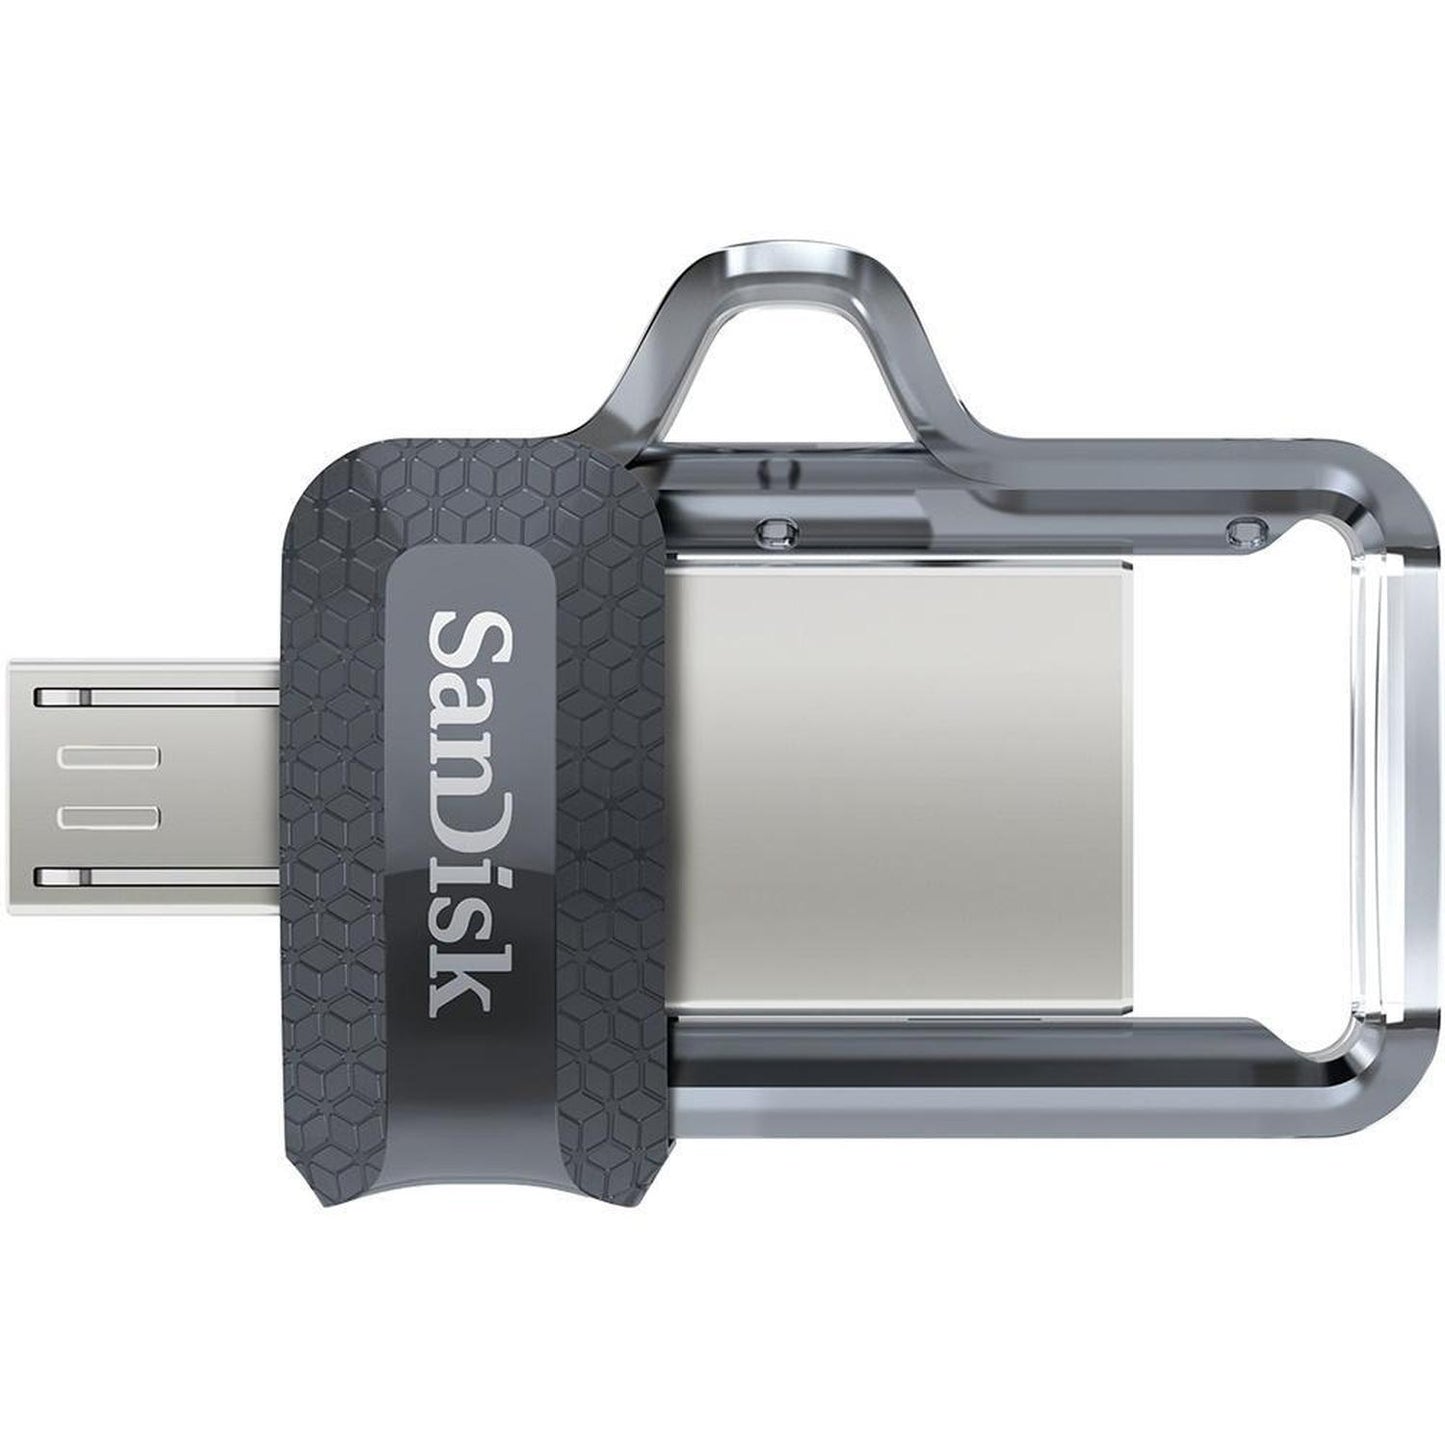 Memoria USB SanDisk Ultra Dual Drive M3.0, 64GB, USB 3.0, Gris